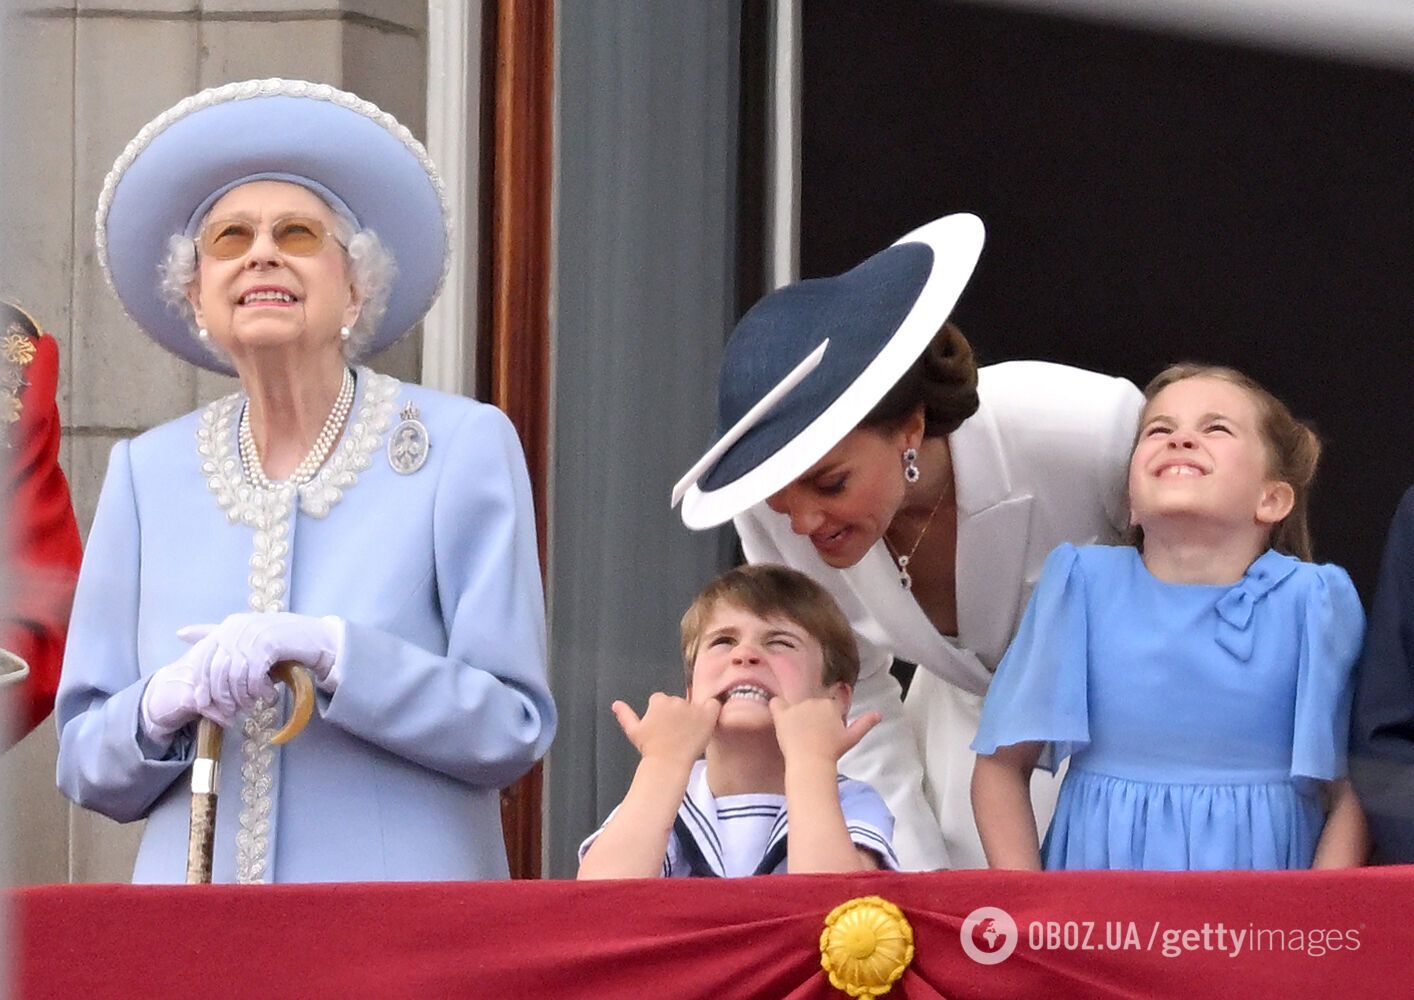 Кейт Миддлтон и принц Уильям прокомментировали поведение 4-летнего сына, укравшего праздник у королевы